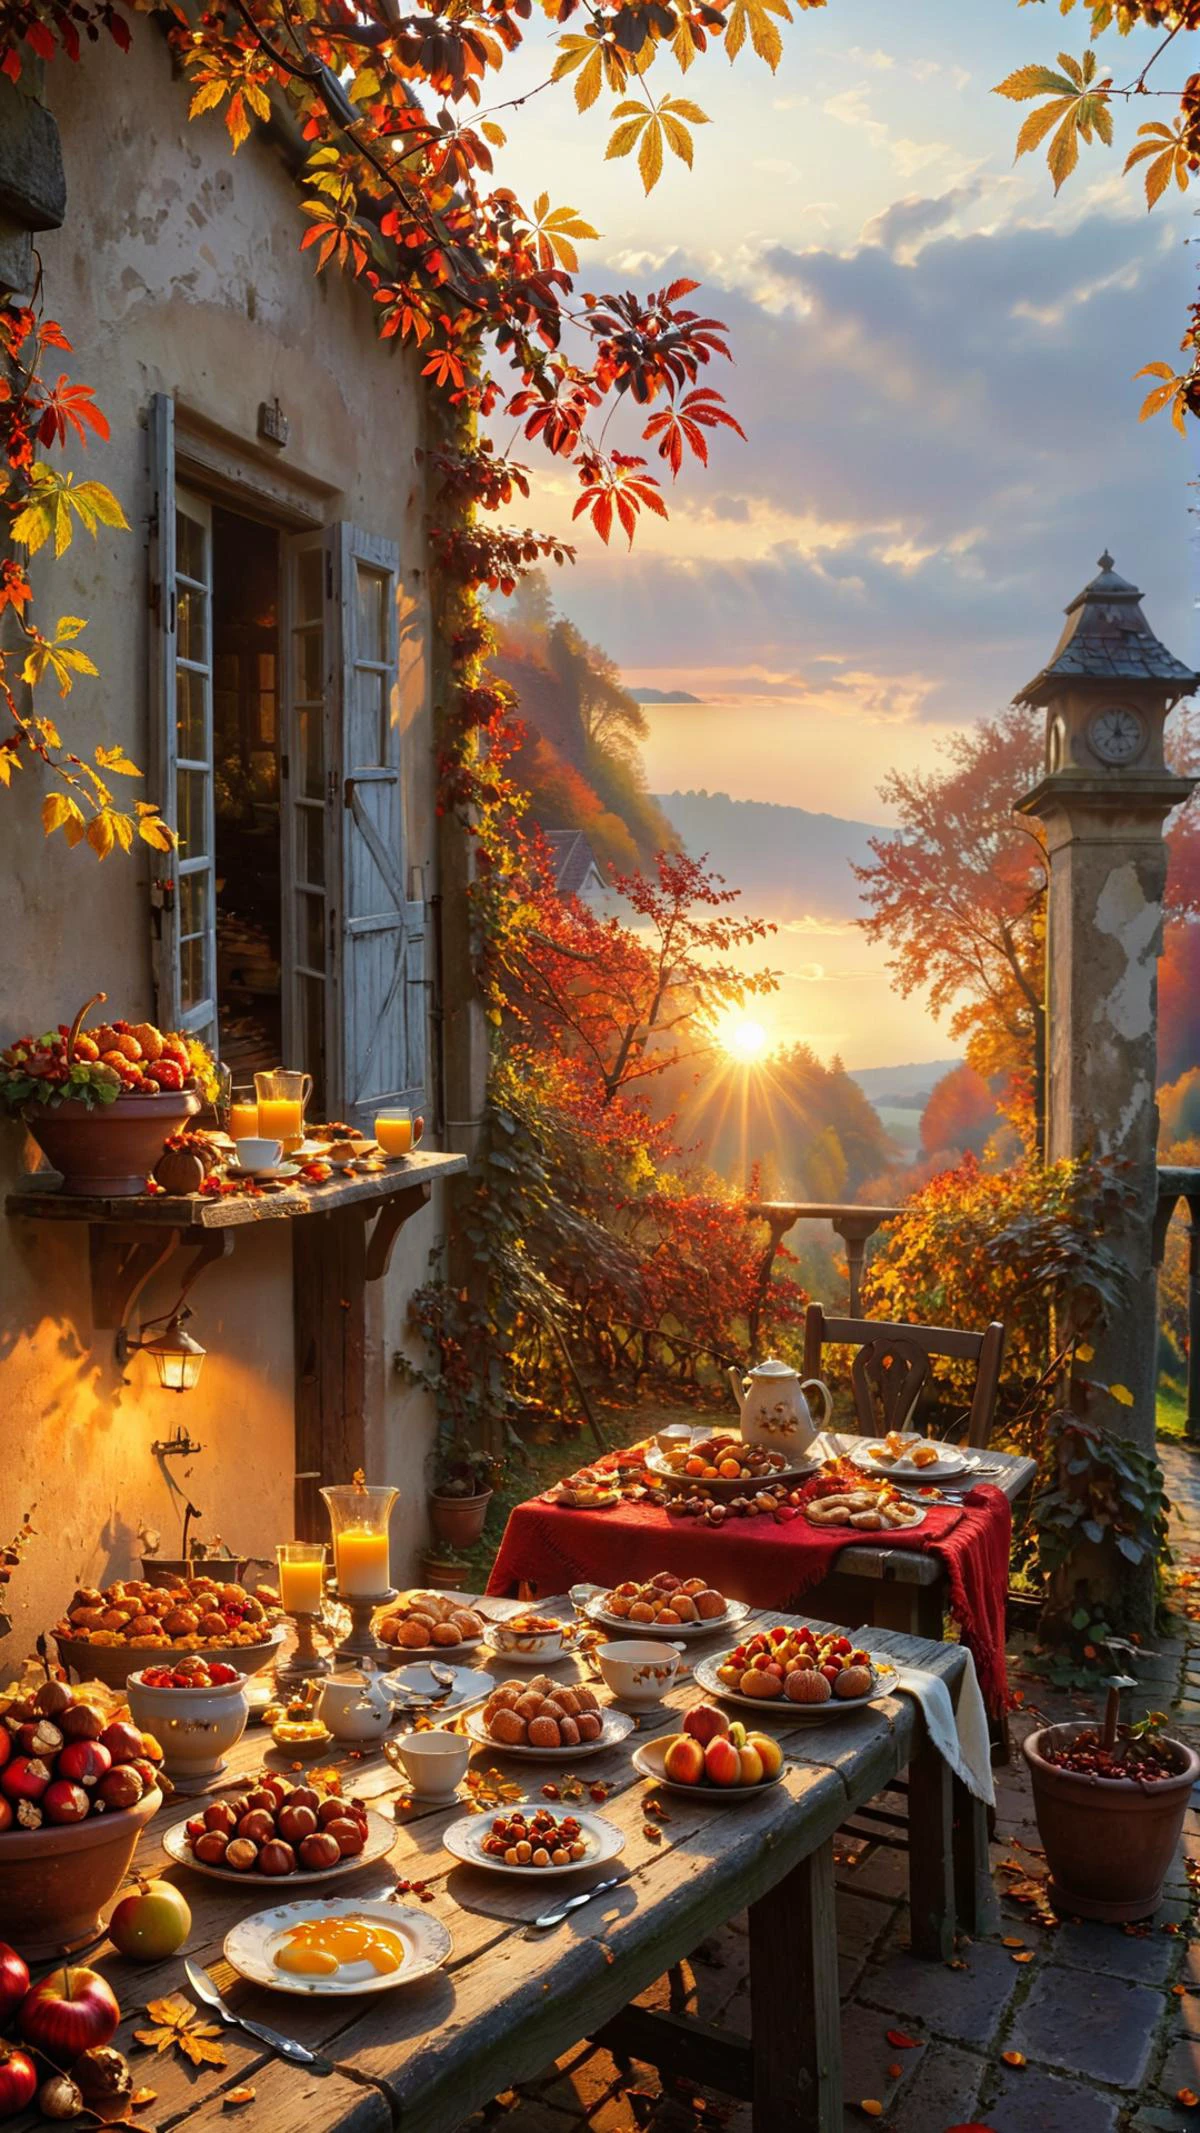 这一迷人的场景捕捉了舒适的秋日早晨的精髓，乡村露台充满了大自然的馈赠. 桌子上摆满了新鲜的水果和面包, 太阳在背景中升起，为大地投下温暖的光芒. 画家巧妙地描绘了这个季节的丰富色彩和纹理，从鲜艳的红叶到秋日阳光的金色色调. 从单个的栗子和榛子到餐具上复杂的图案，对细节的关注令人印象深刻. 这种田园诗般的环境非常适合悠闲地享用早餐或安静地思考片刻，唤起一种平和与安宁的感觉, 
dvr-lnds-sdxl 